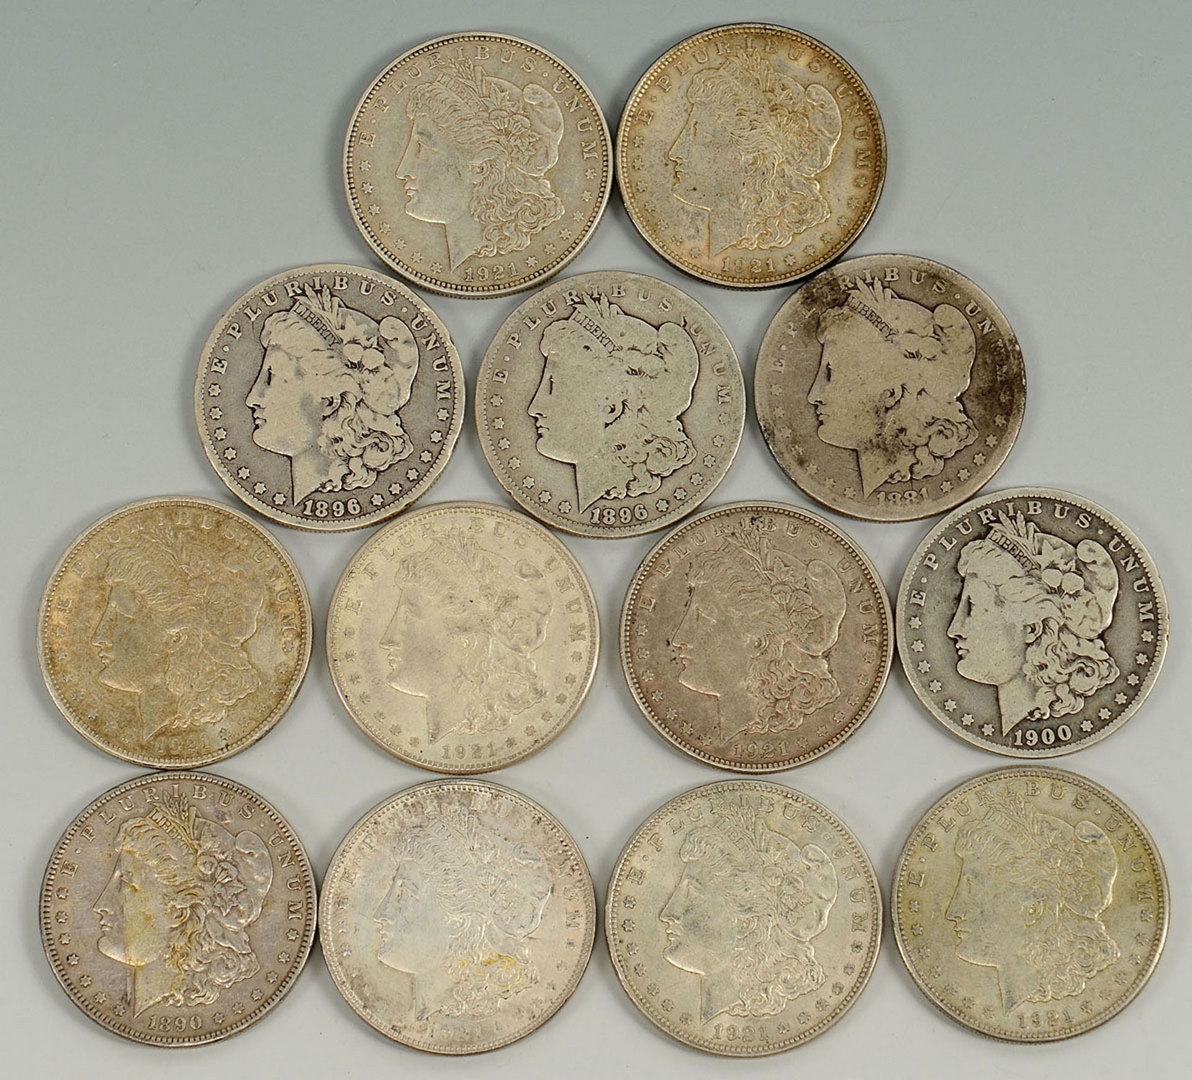 Lot 527: Grouping of 13 Morgan Silver Dollars